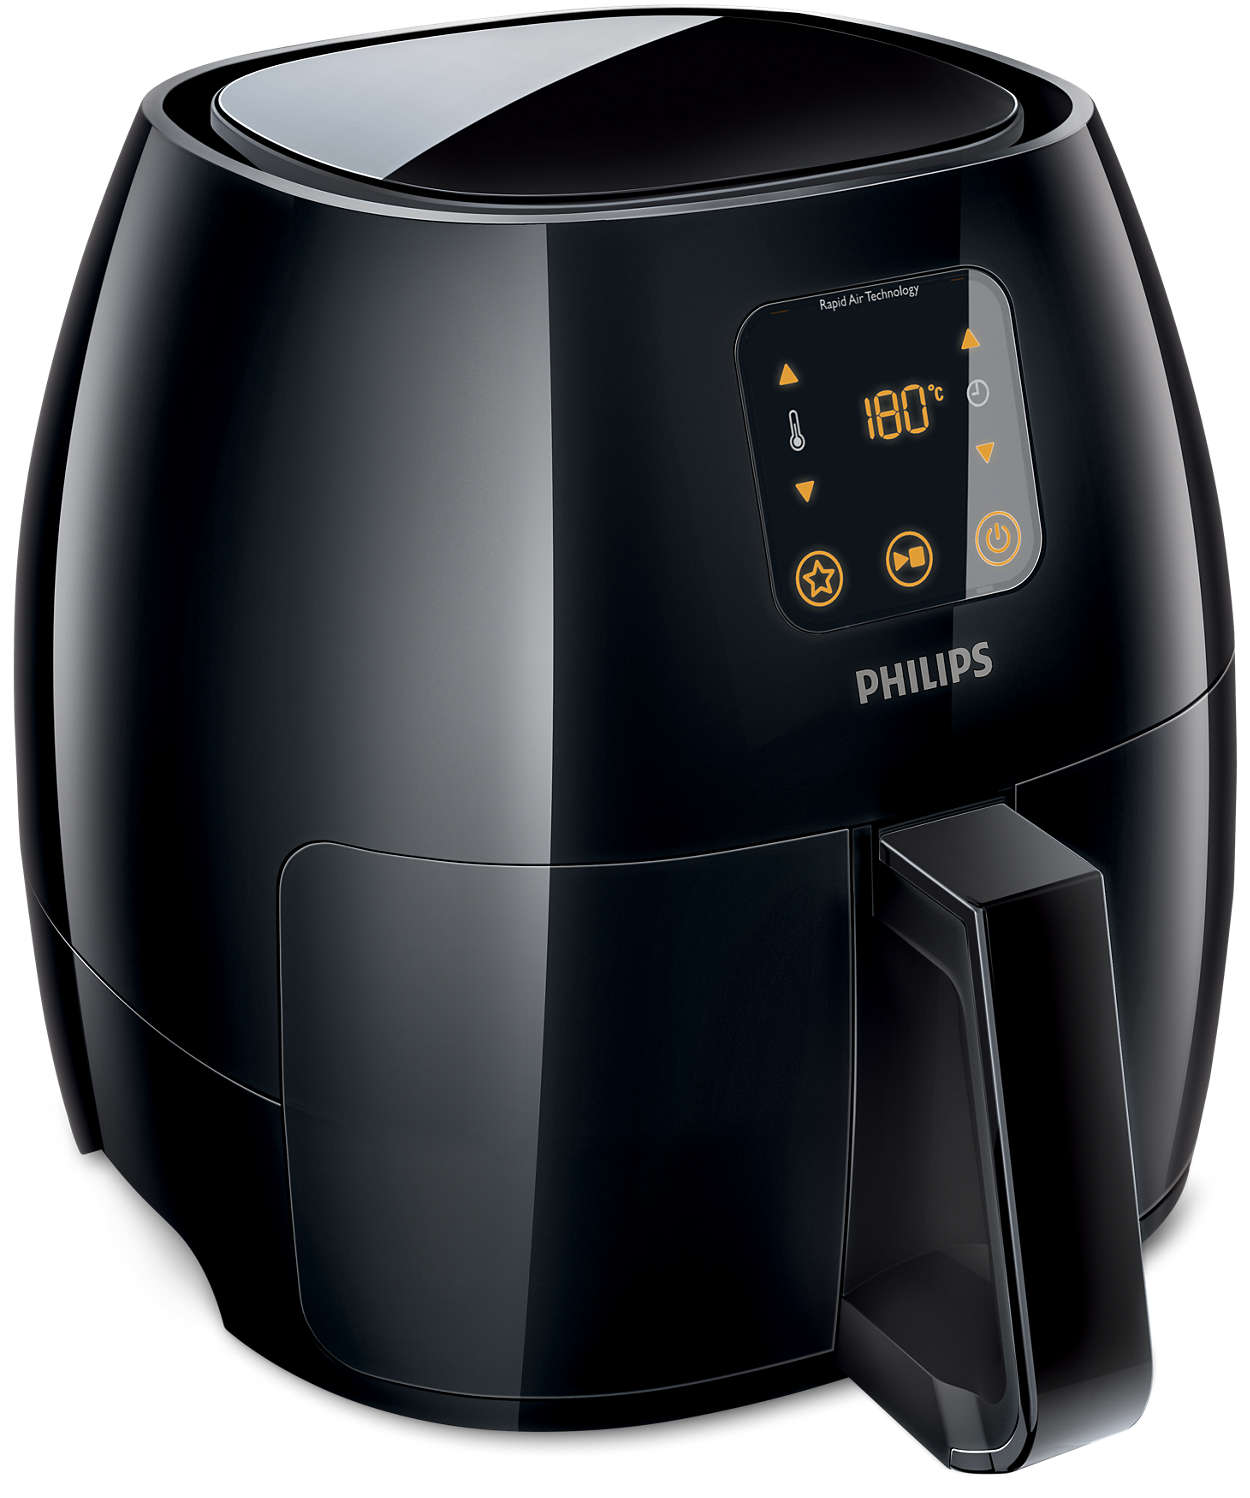 Philips hd9240 xl fritteuse - schwarz - Die Auswahl unter allen Philips hd9240 xl fritteuse - schwarz